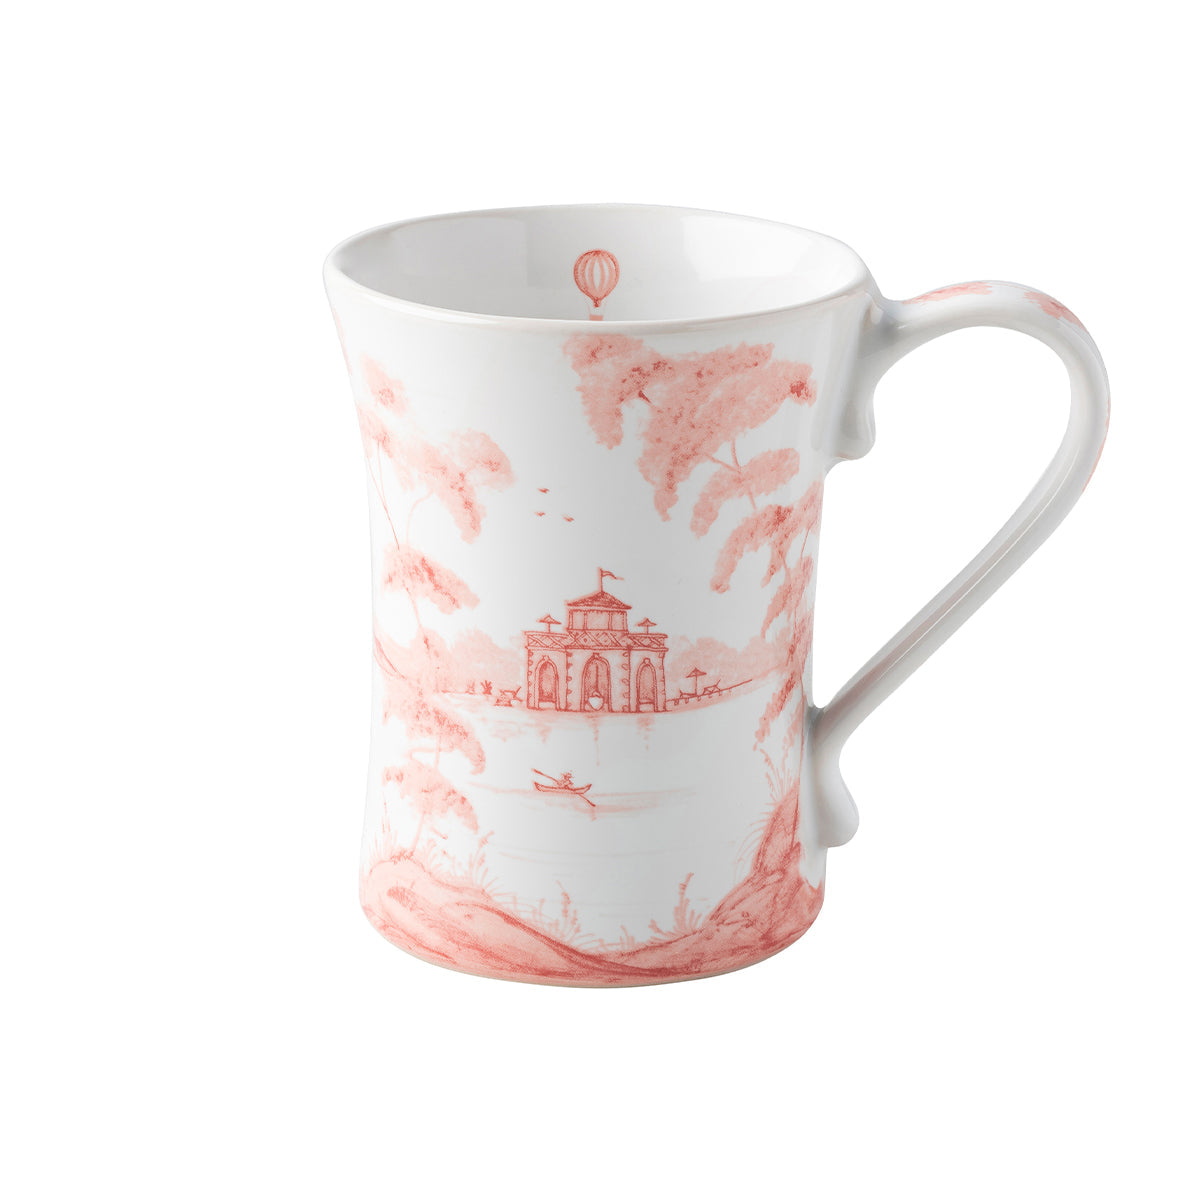 Country Estate Mug Set/4 - Petal Pink | 2nd